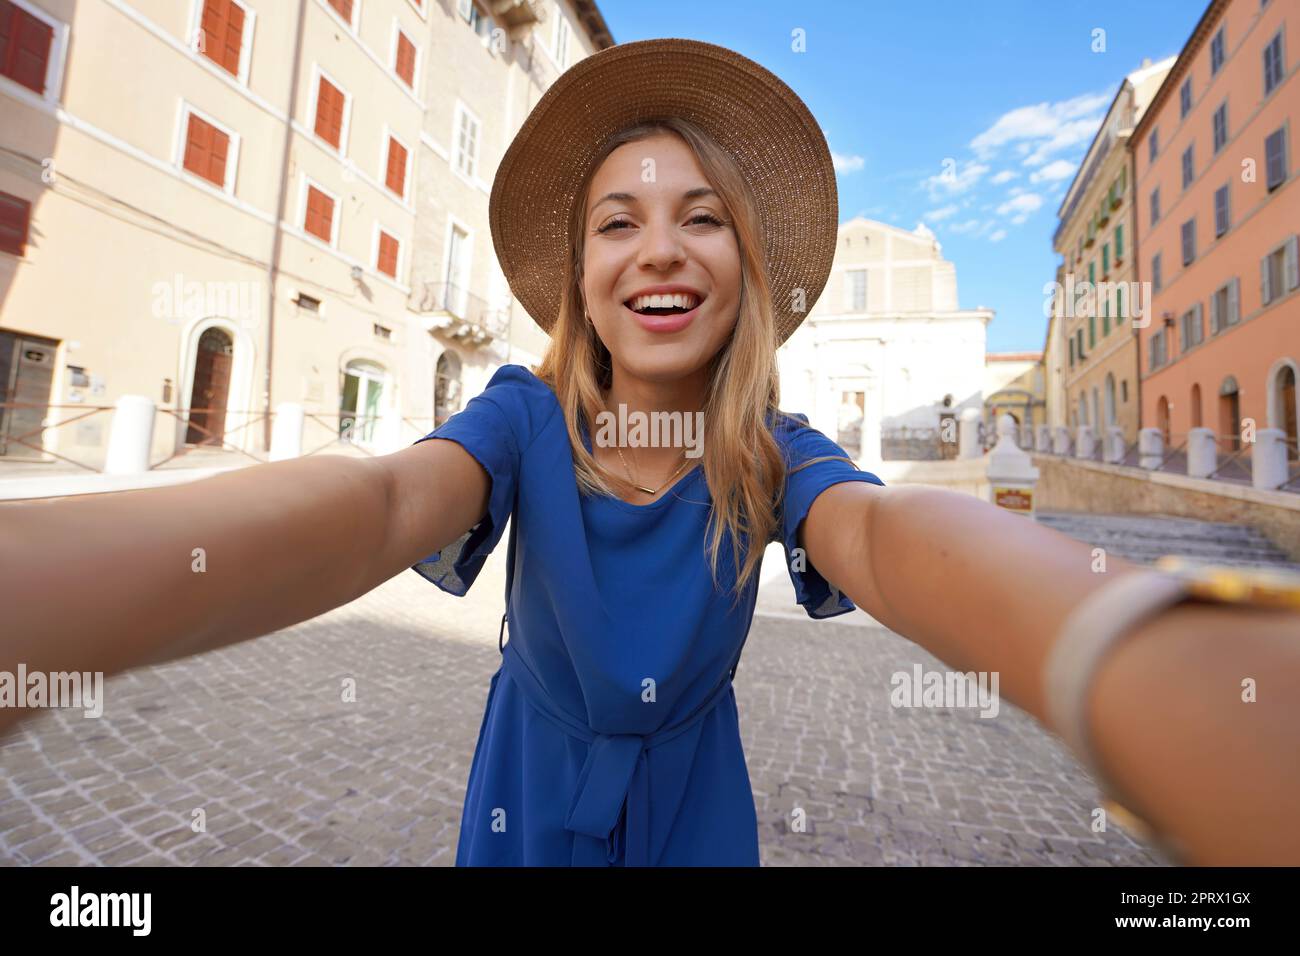 Lächelndes Mädchen in blauem Kleid und Hut macht Selfie-Bilder in Anconara, Marken, Italien Stockfoto